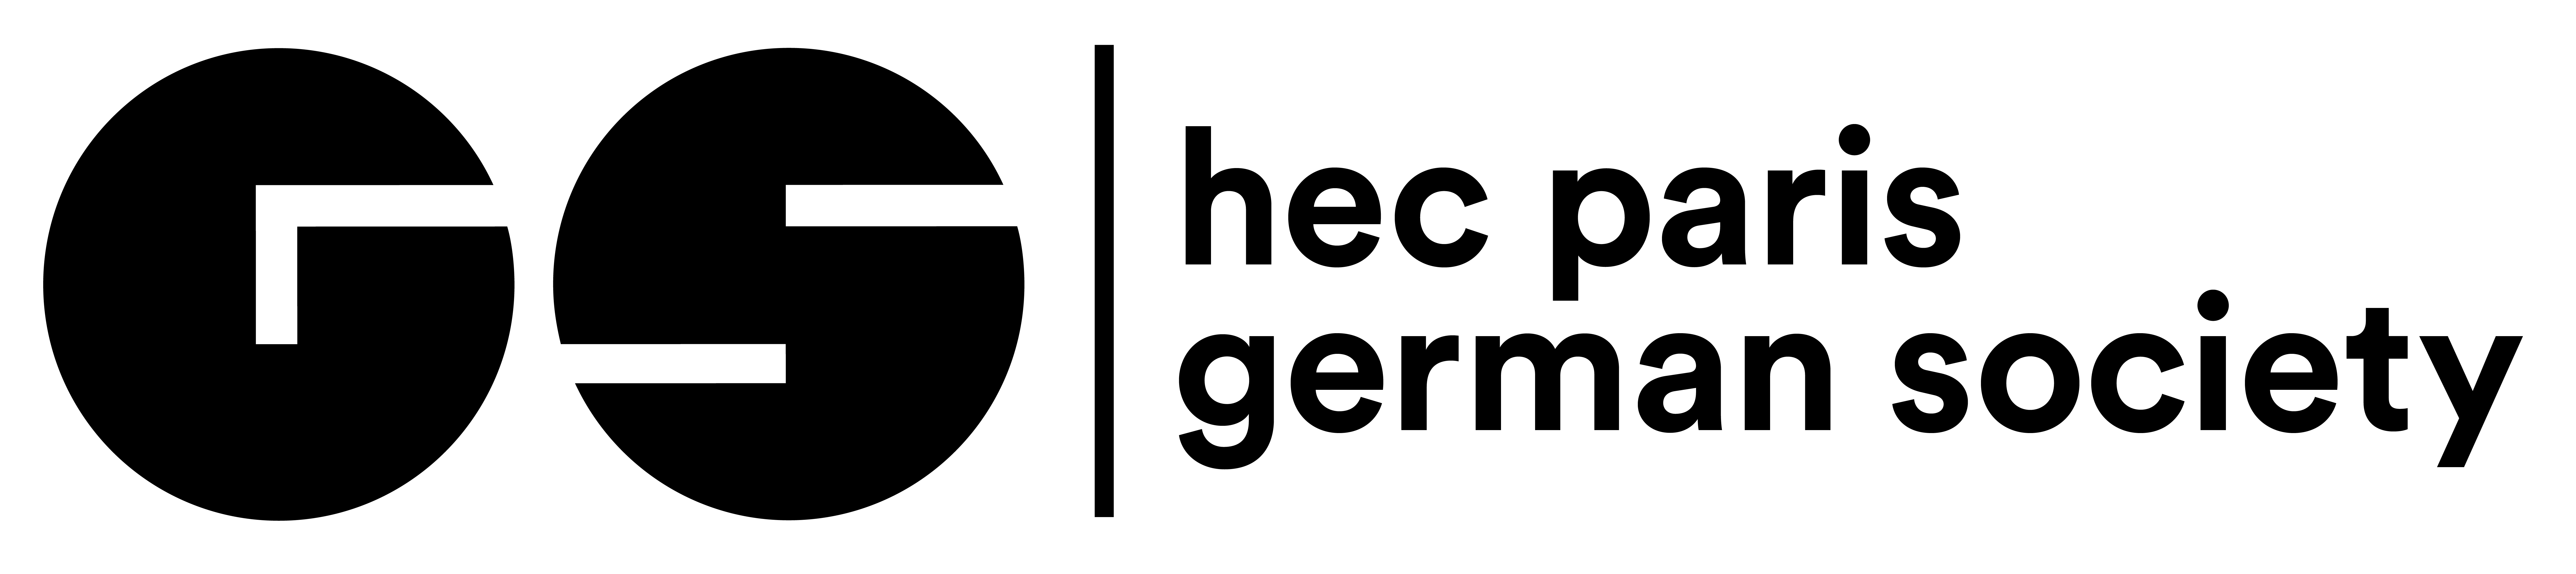 HEC Paris German Society